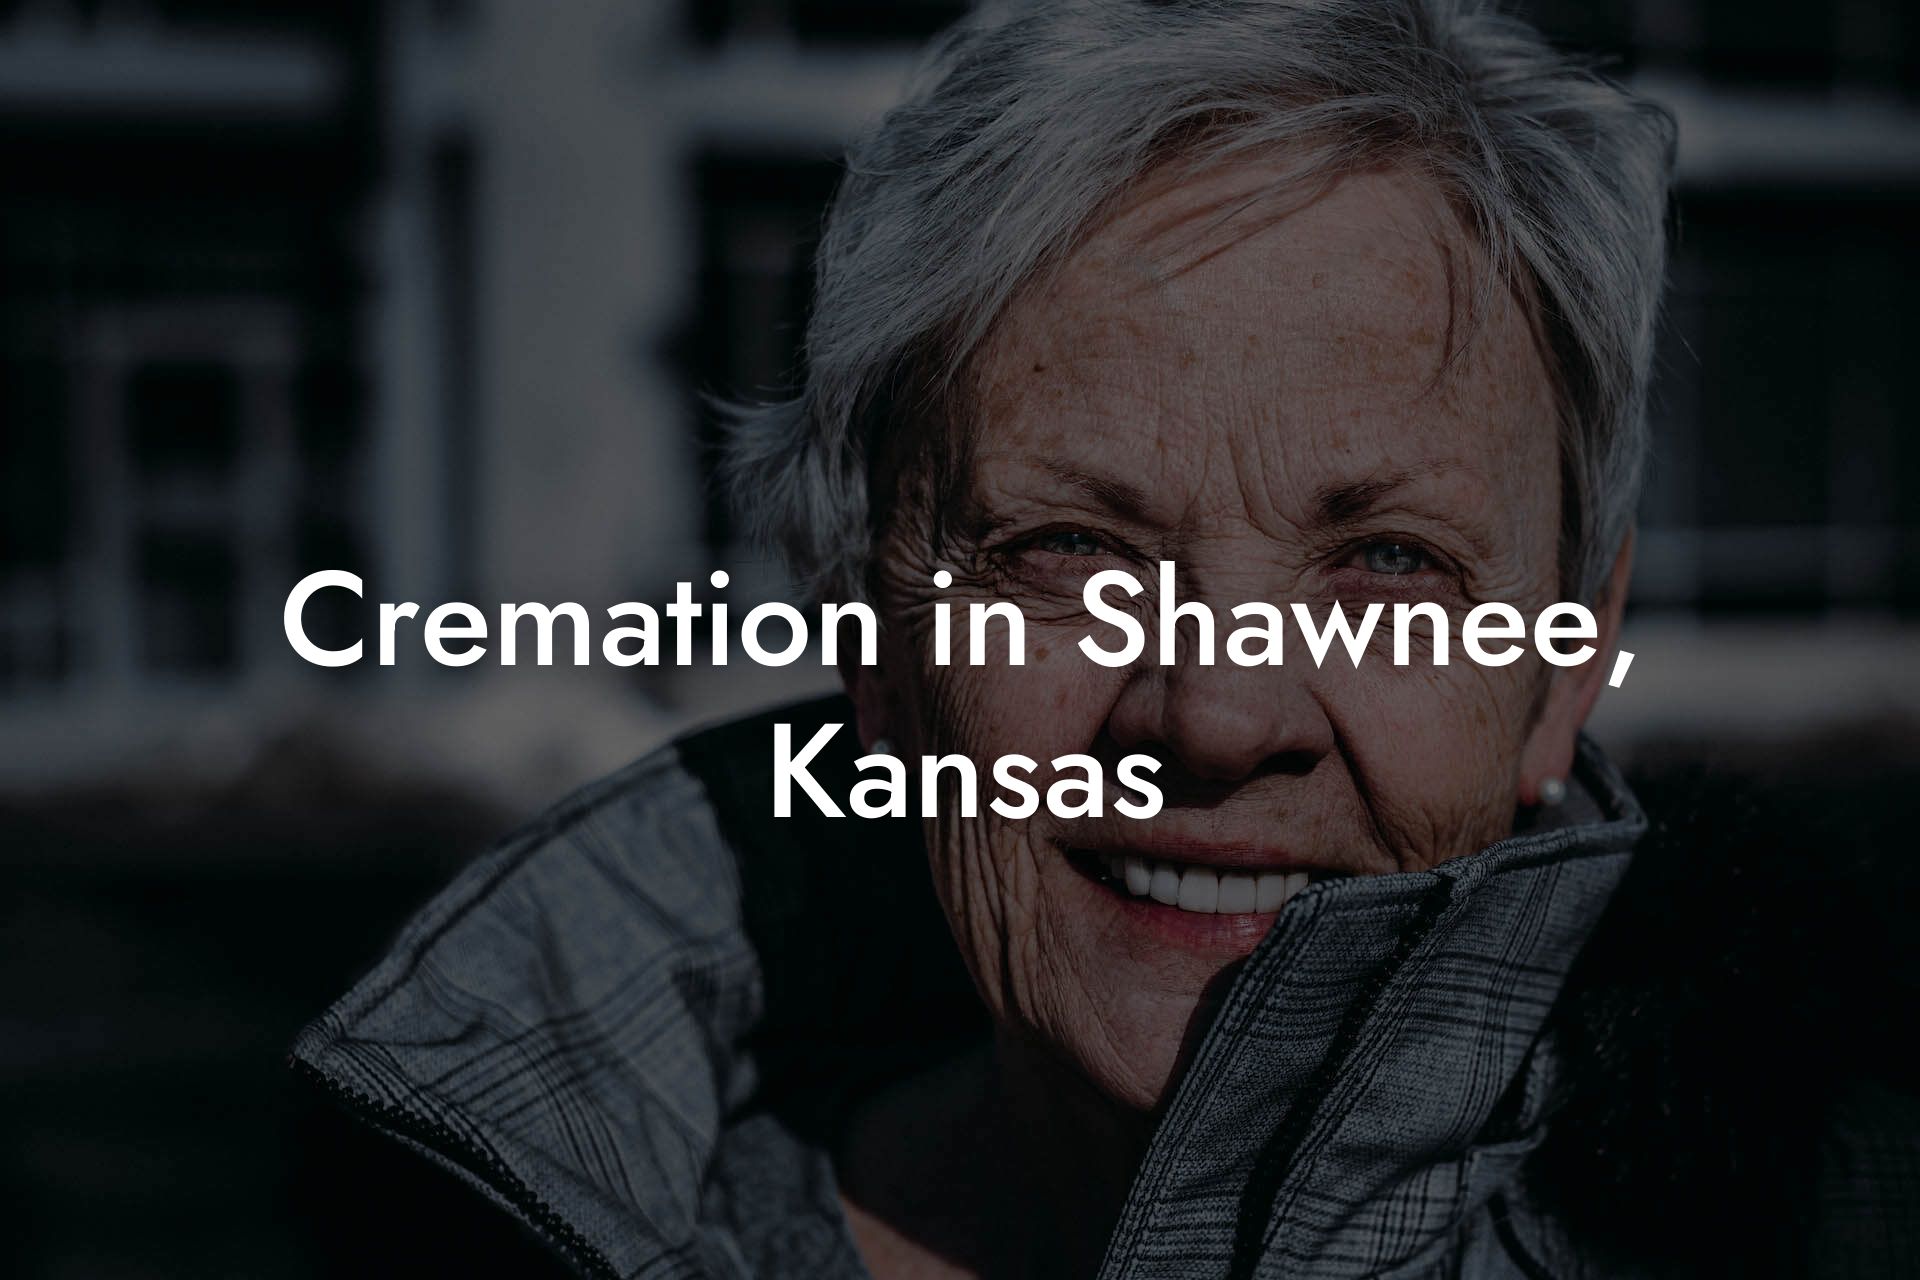 Cremation in Shawnee, Kansas